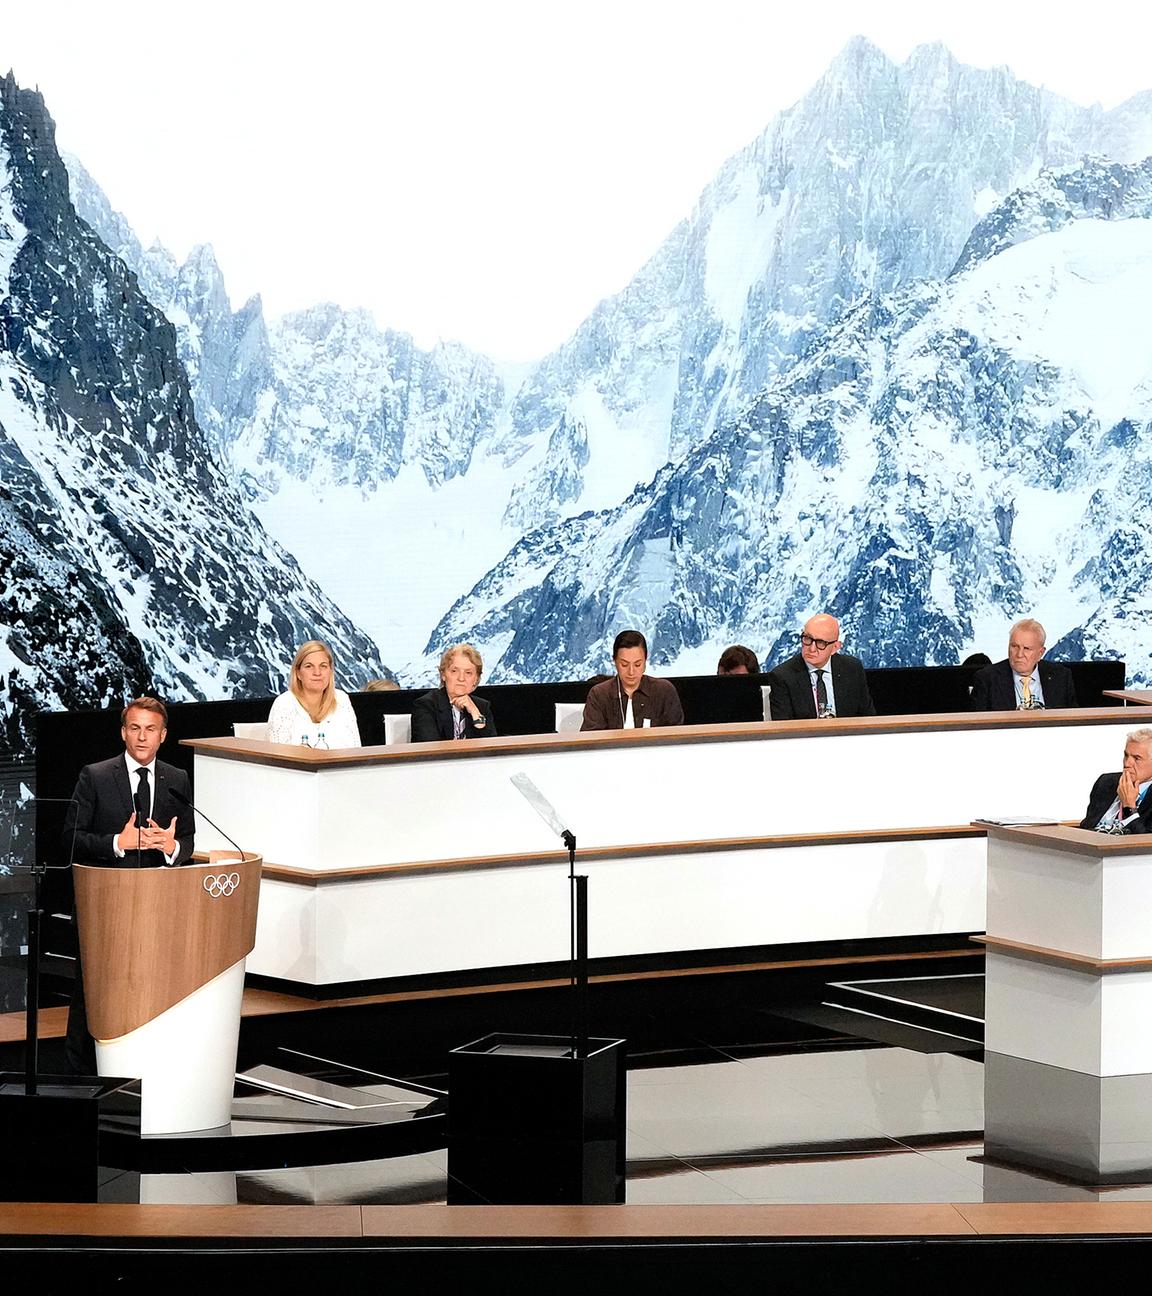 Der französische Präsident Emmanuel Macron (links) hält seine Rede während der Präsentation der französischen Bewerbung um die Ausrichtung der Olympischen Winterspiele 2030 während der 142. IOC-Sitzung bei den Olympischen Sommerspielen 2024